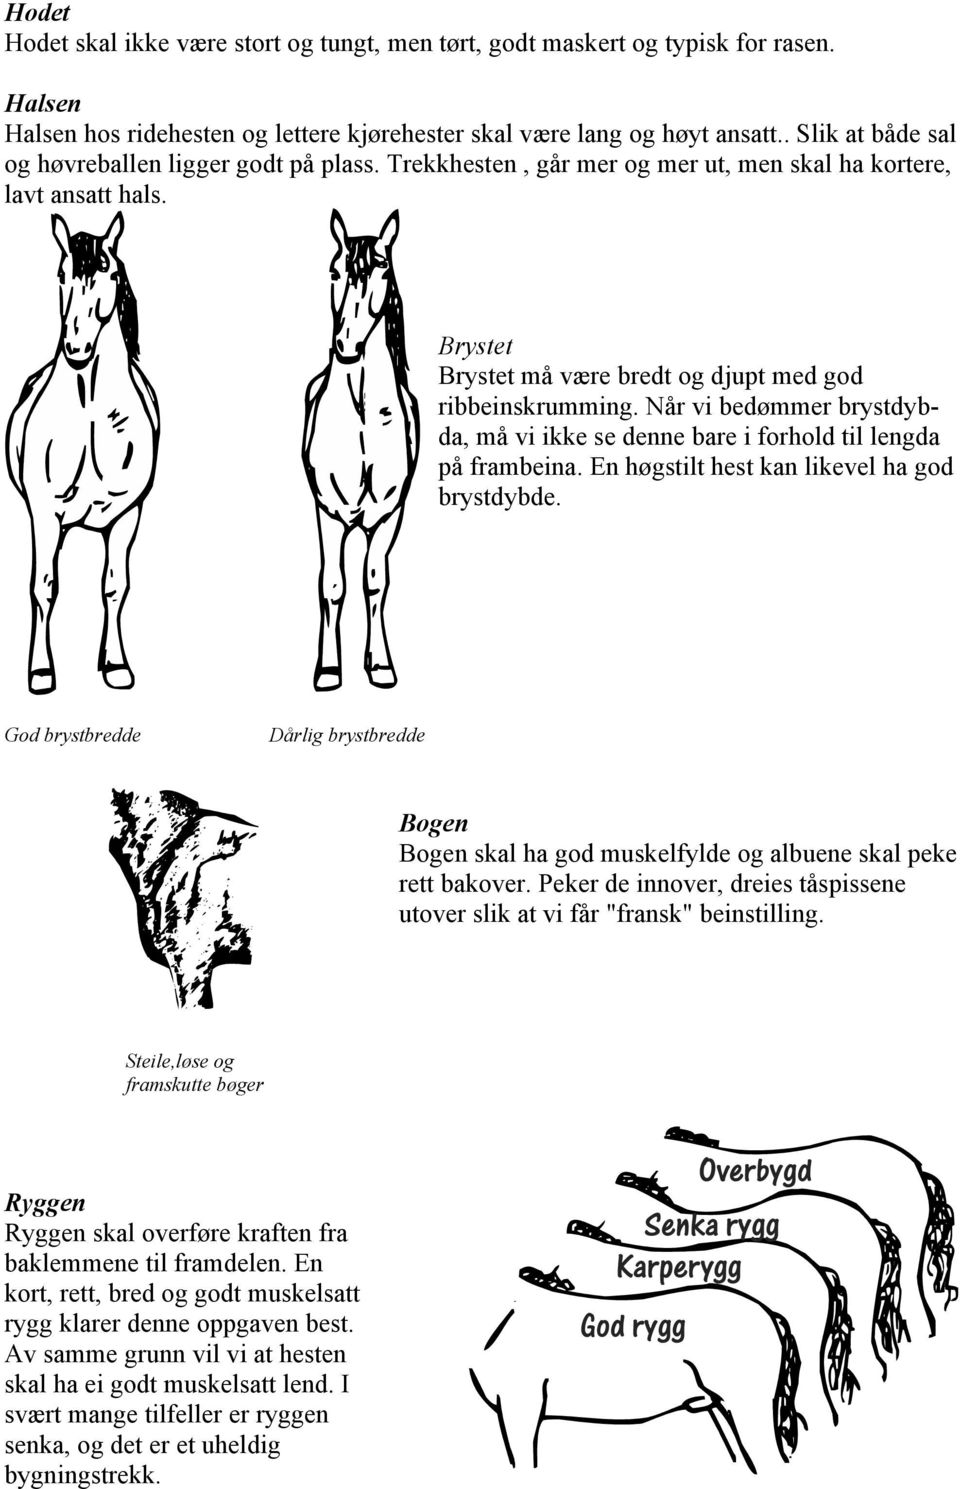 Når vi bedømmer brystdybda, må vi ikke se denne bare i forhold til lengda på frambeina. En høgstilt hest kan likevel ha god brystdybde.